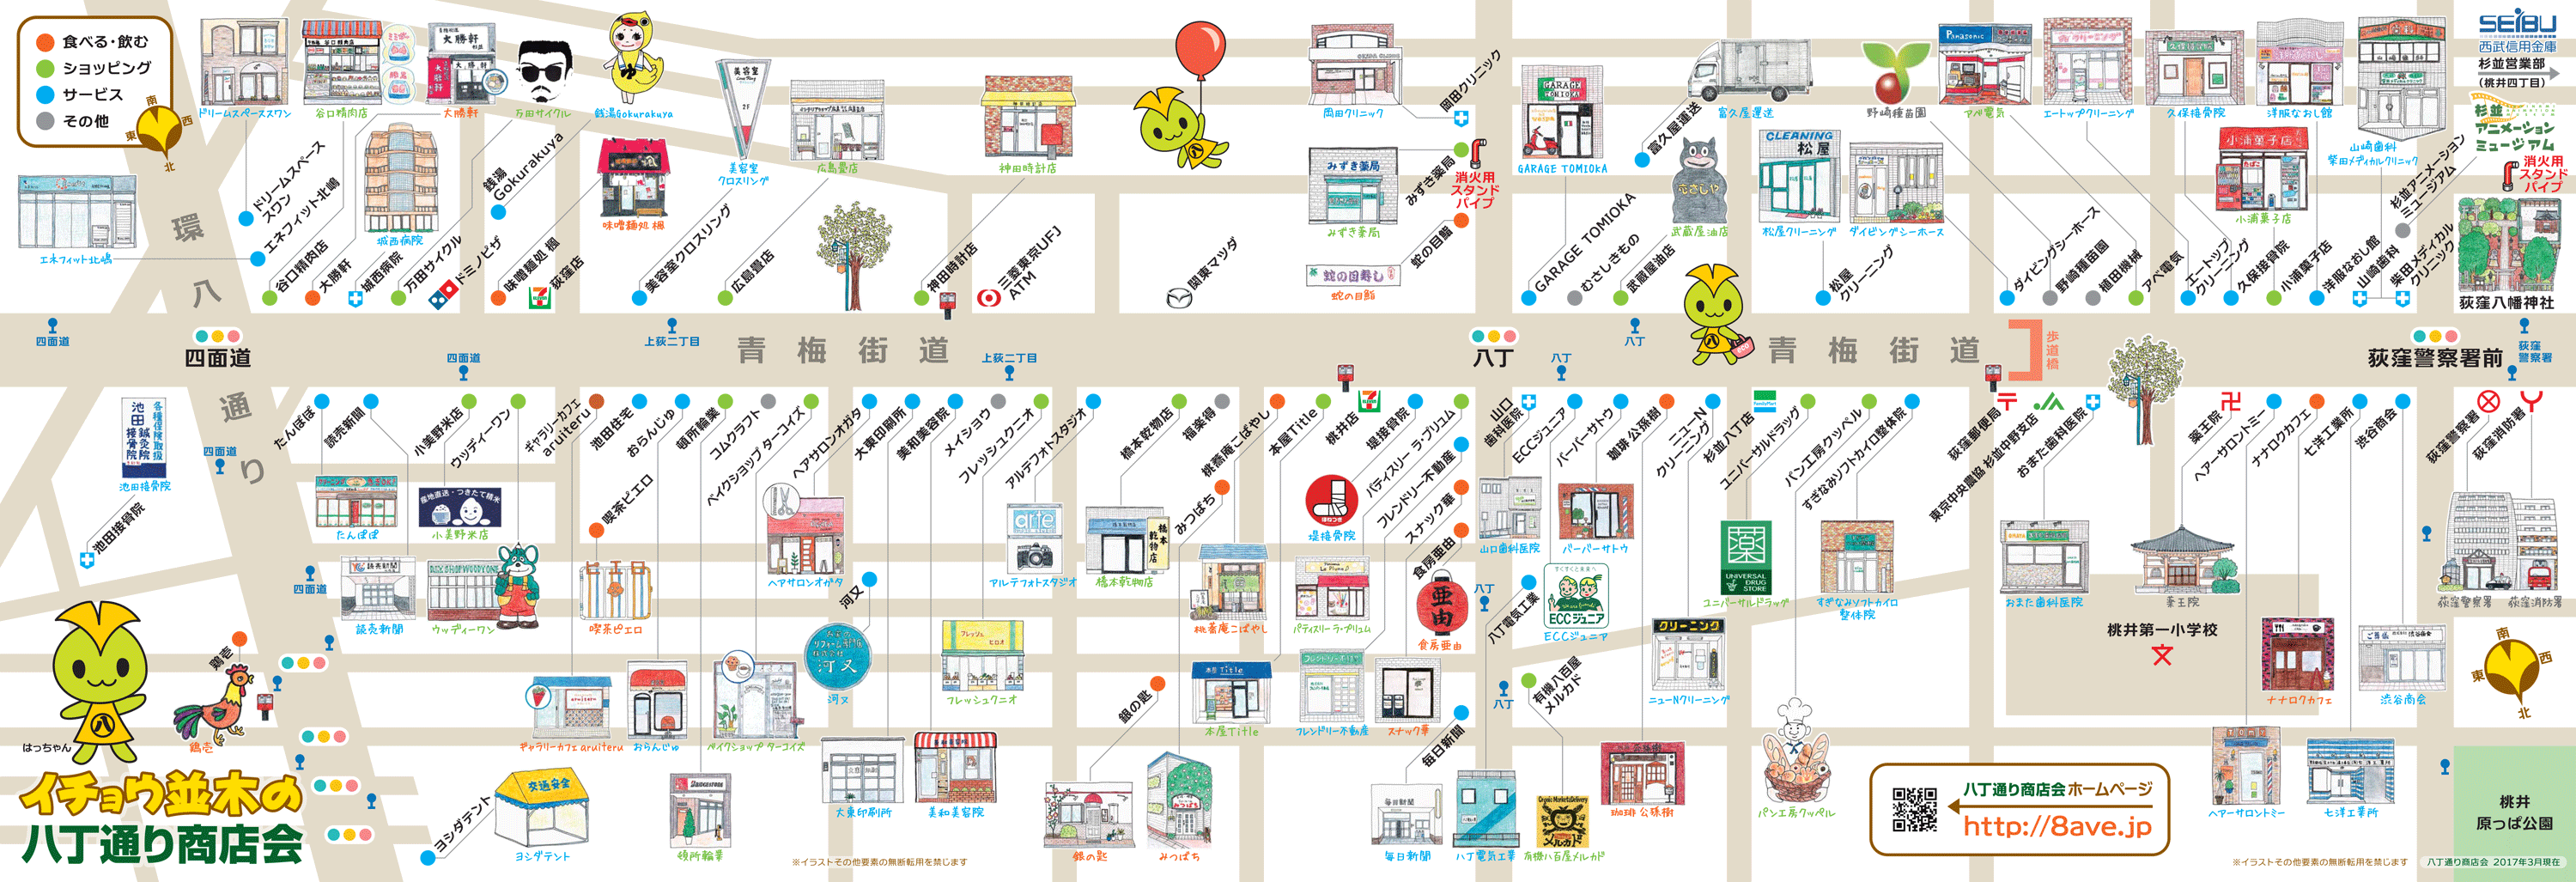 荻窪 八丁通り商店会 イラストマップ